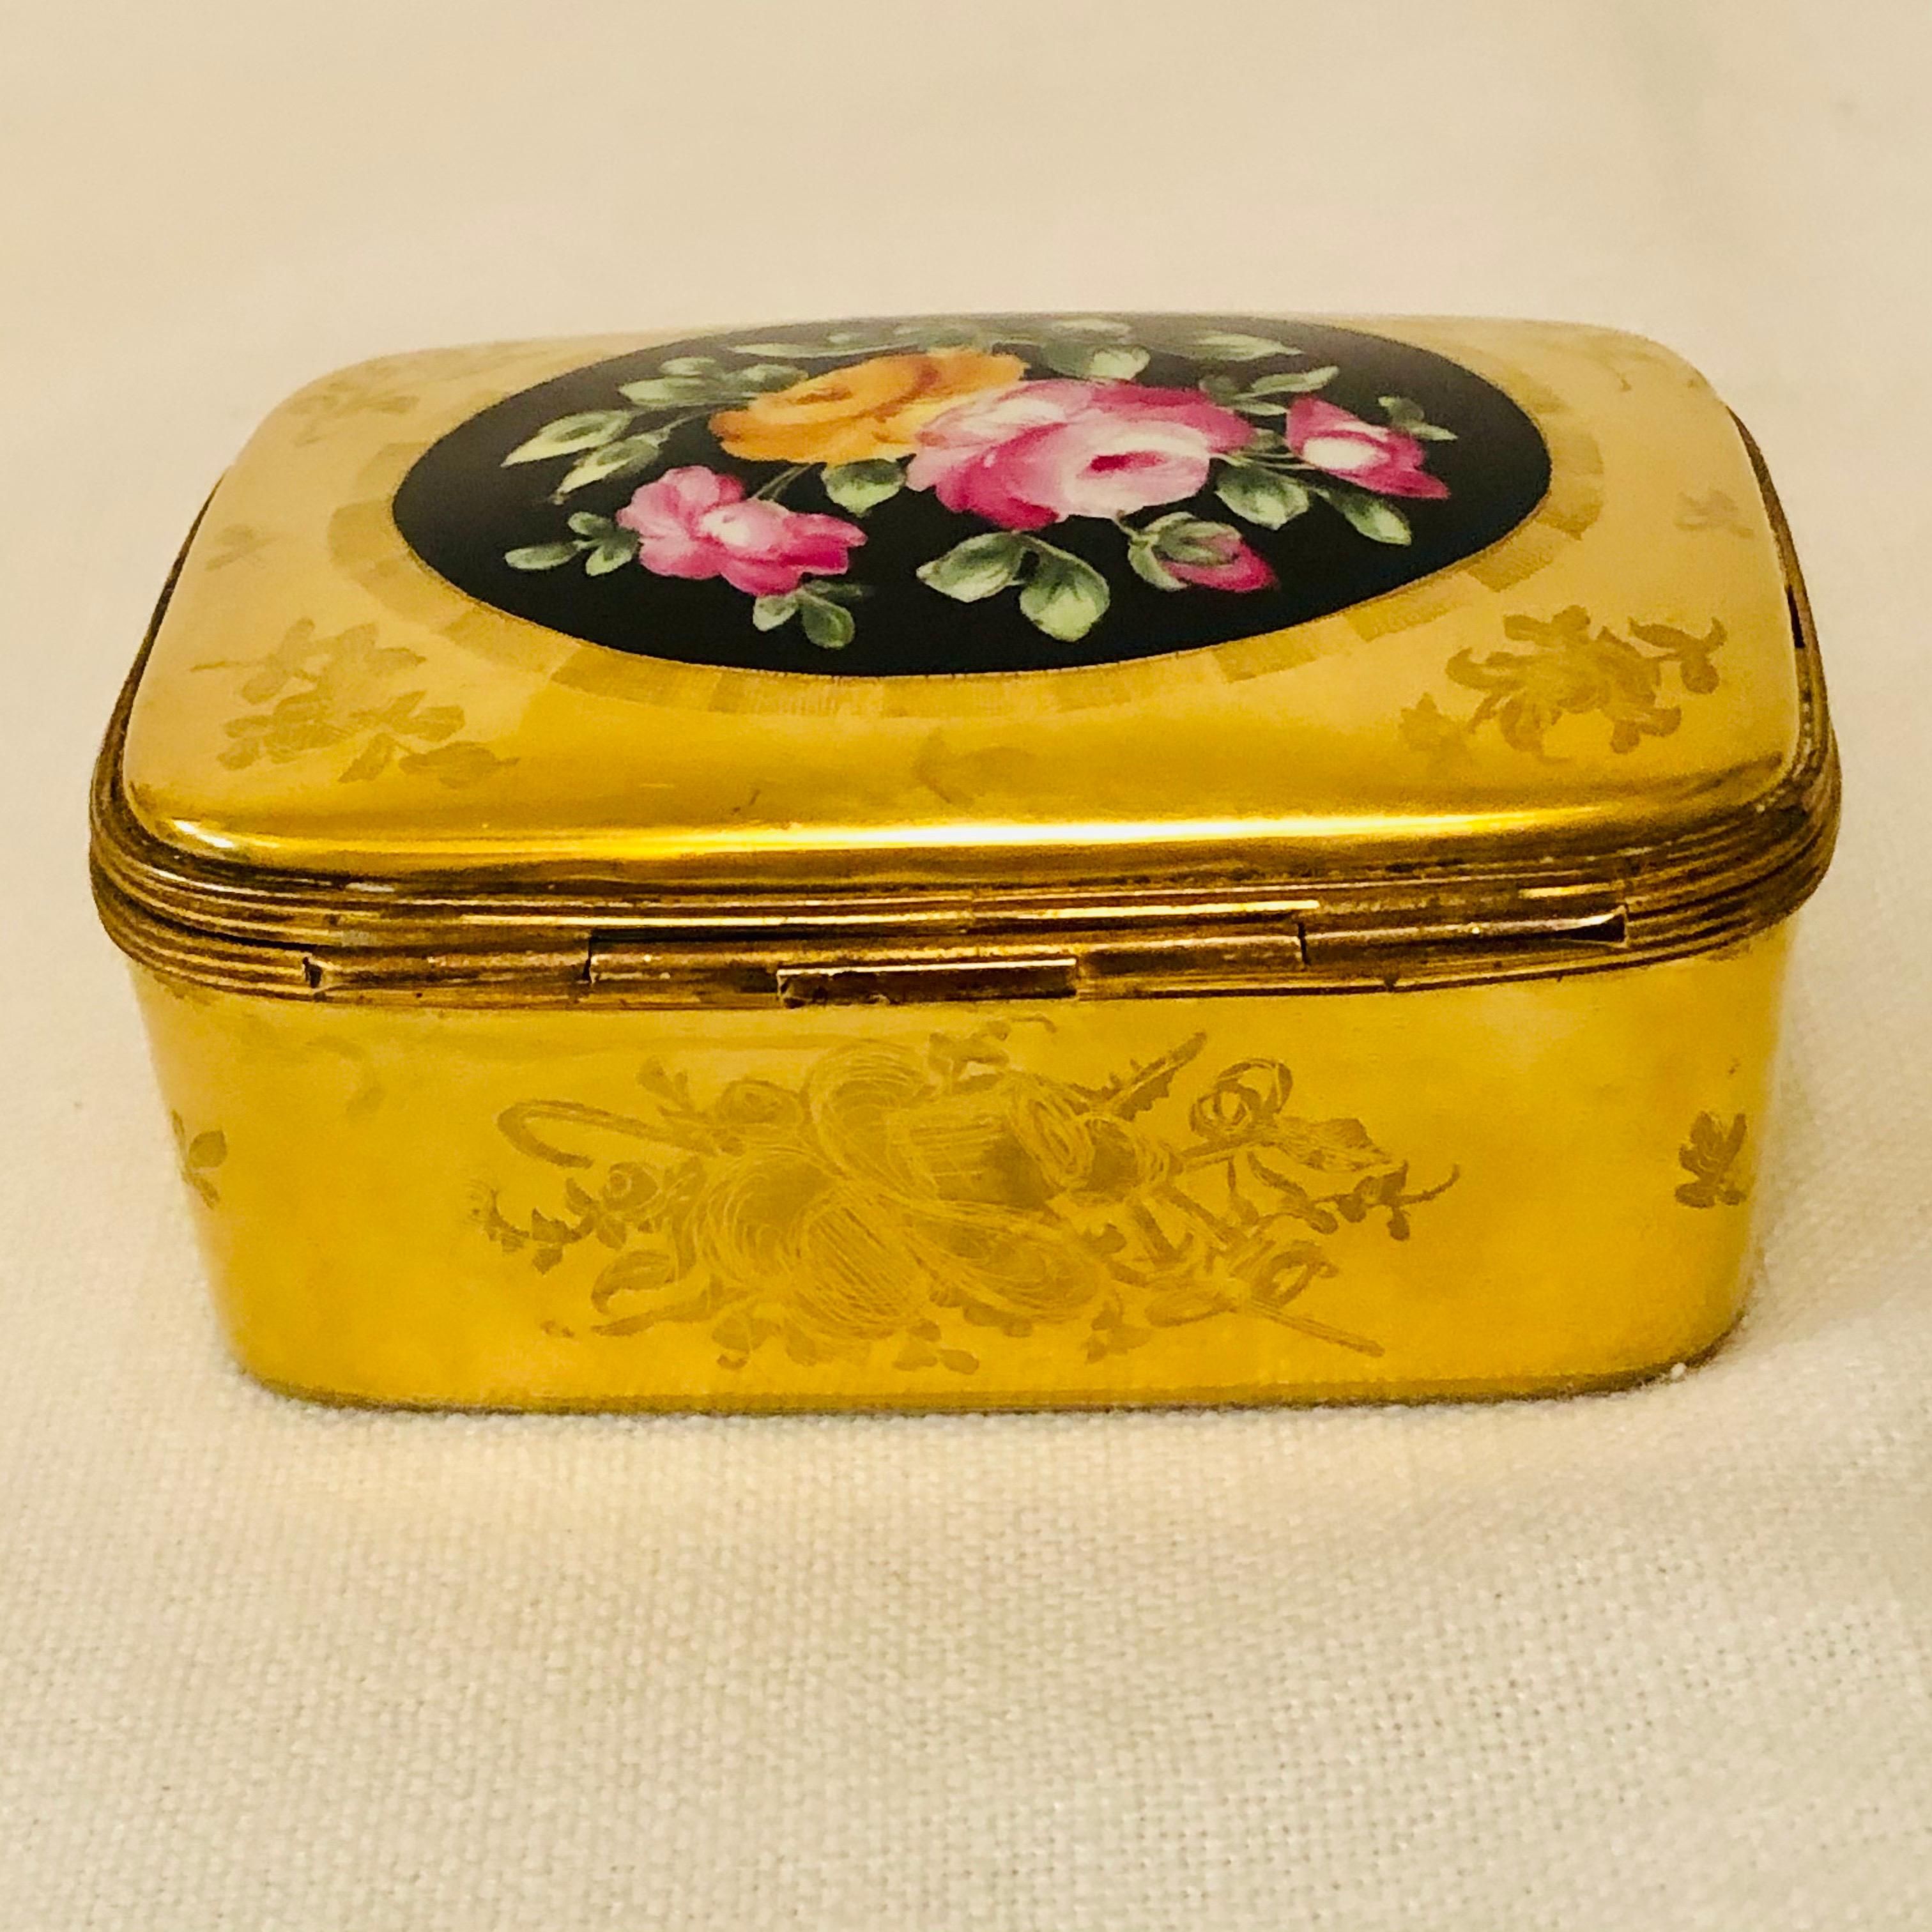 Doré Boîte Le Tallec avec cadre en or et peinture centrale représentant un bouquet de fleurs